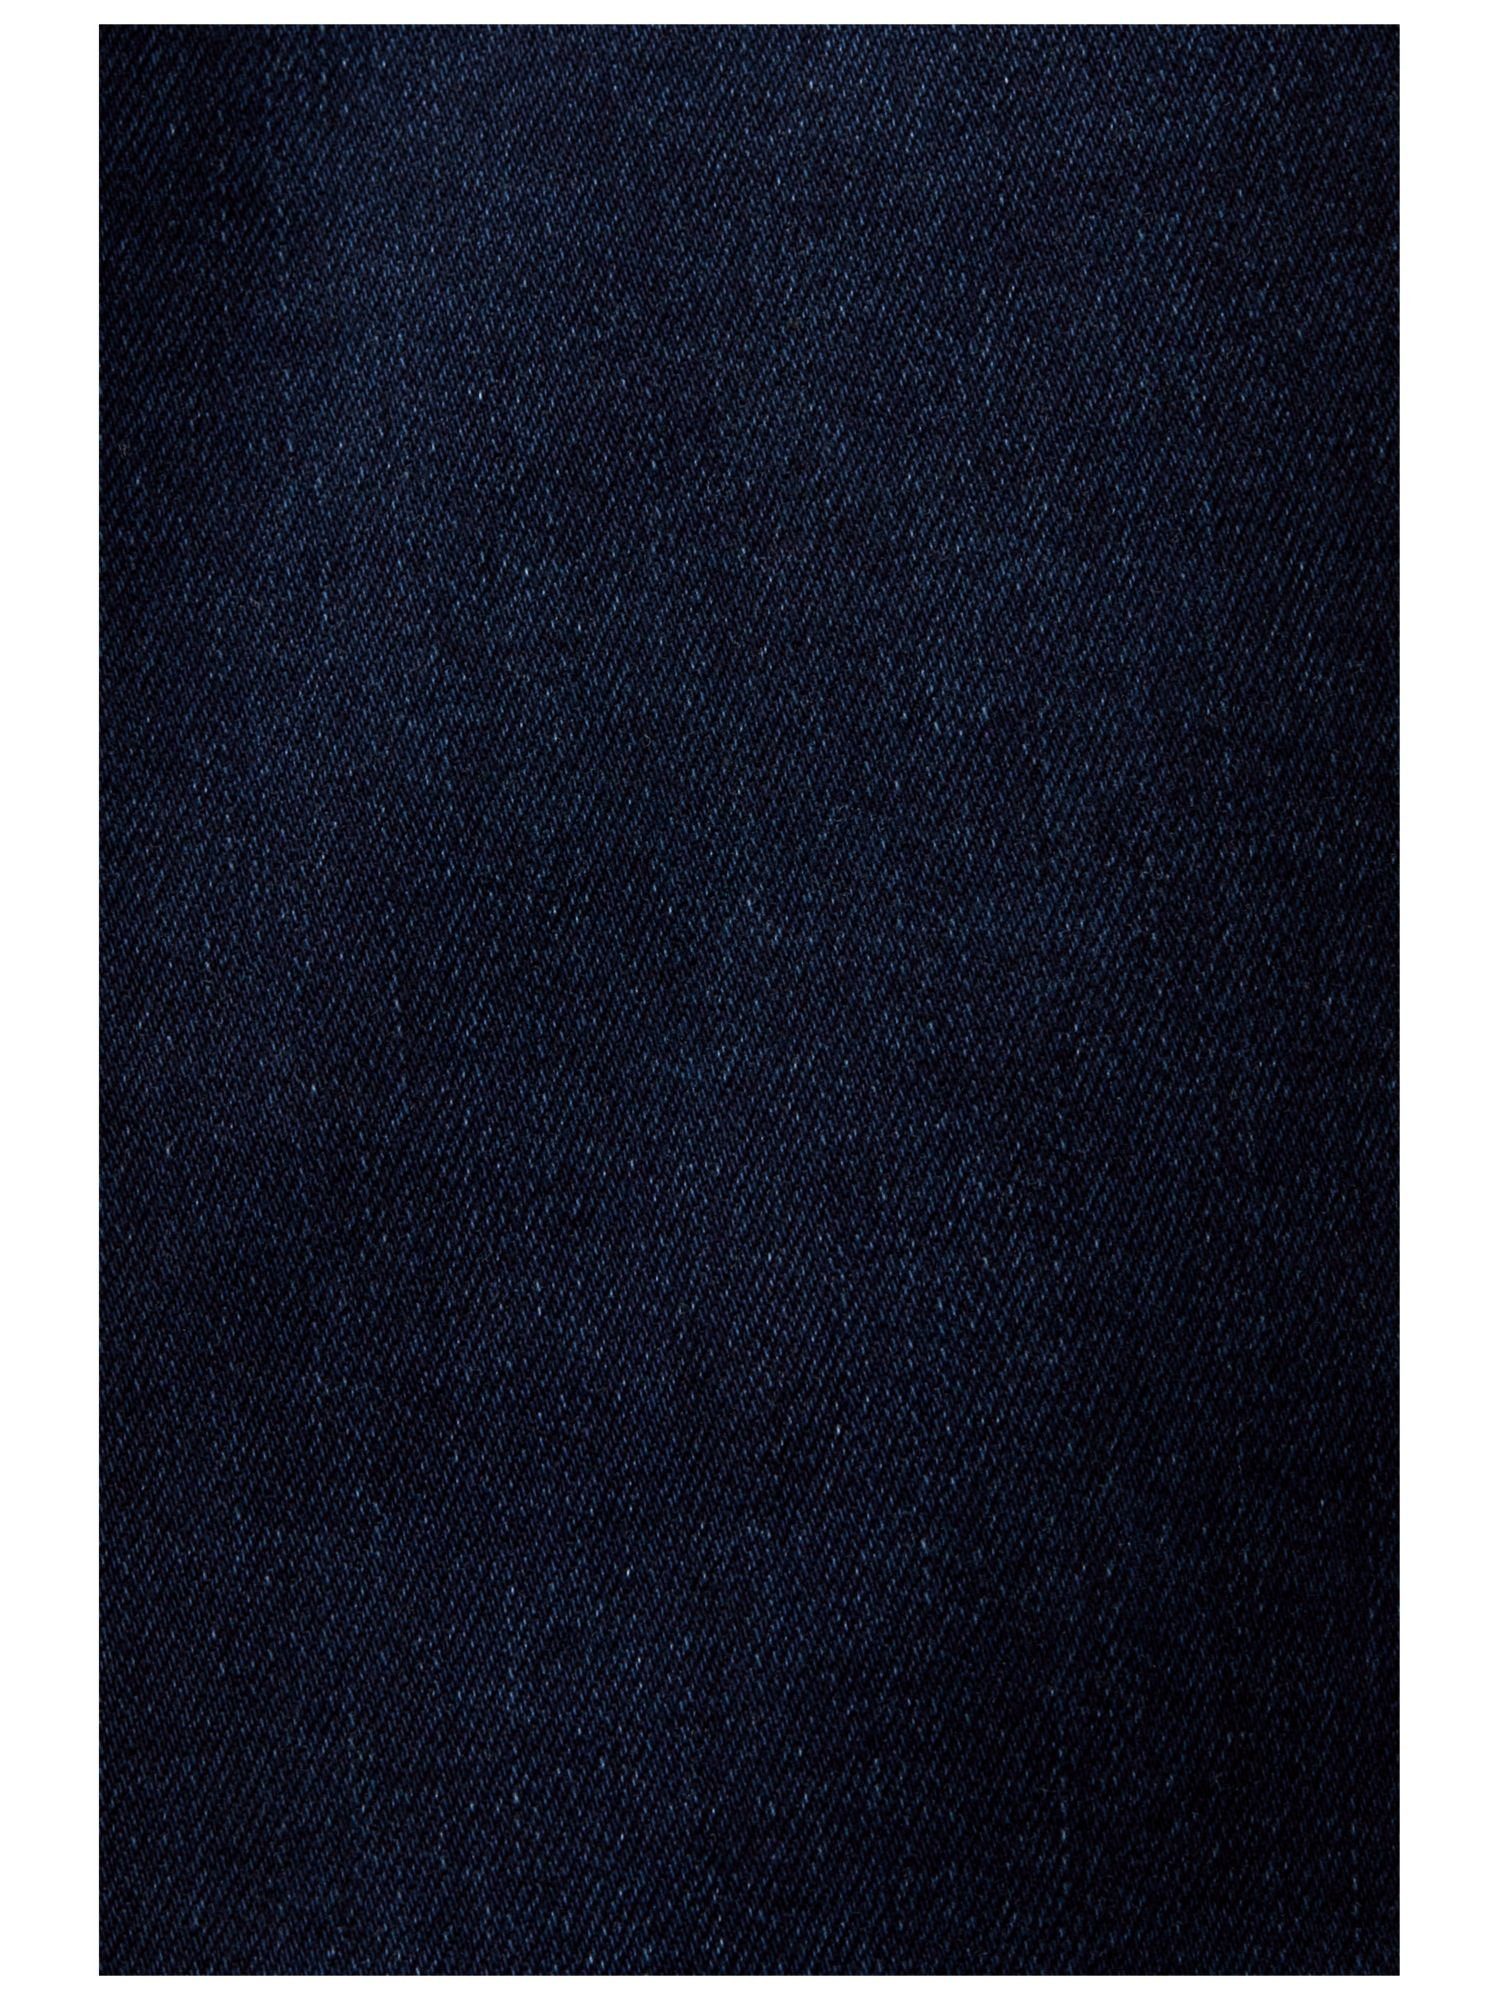 Esprit Skinny-fit-Jeans Schmal geschnittene Jeans mittlerer Bundhöhe mit